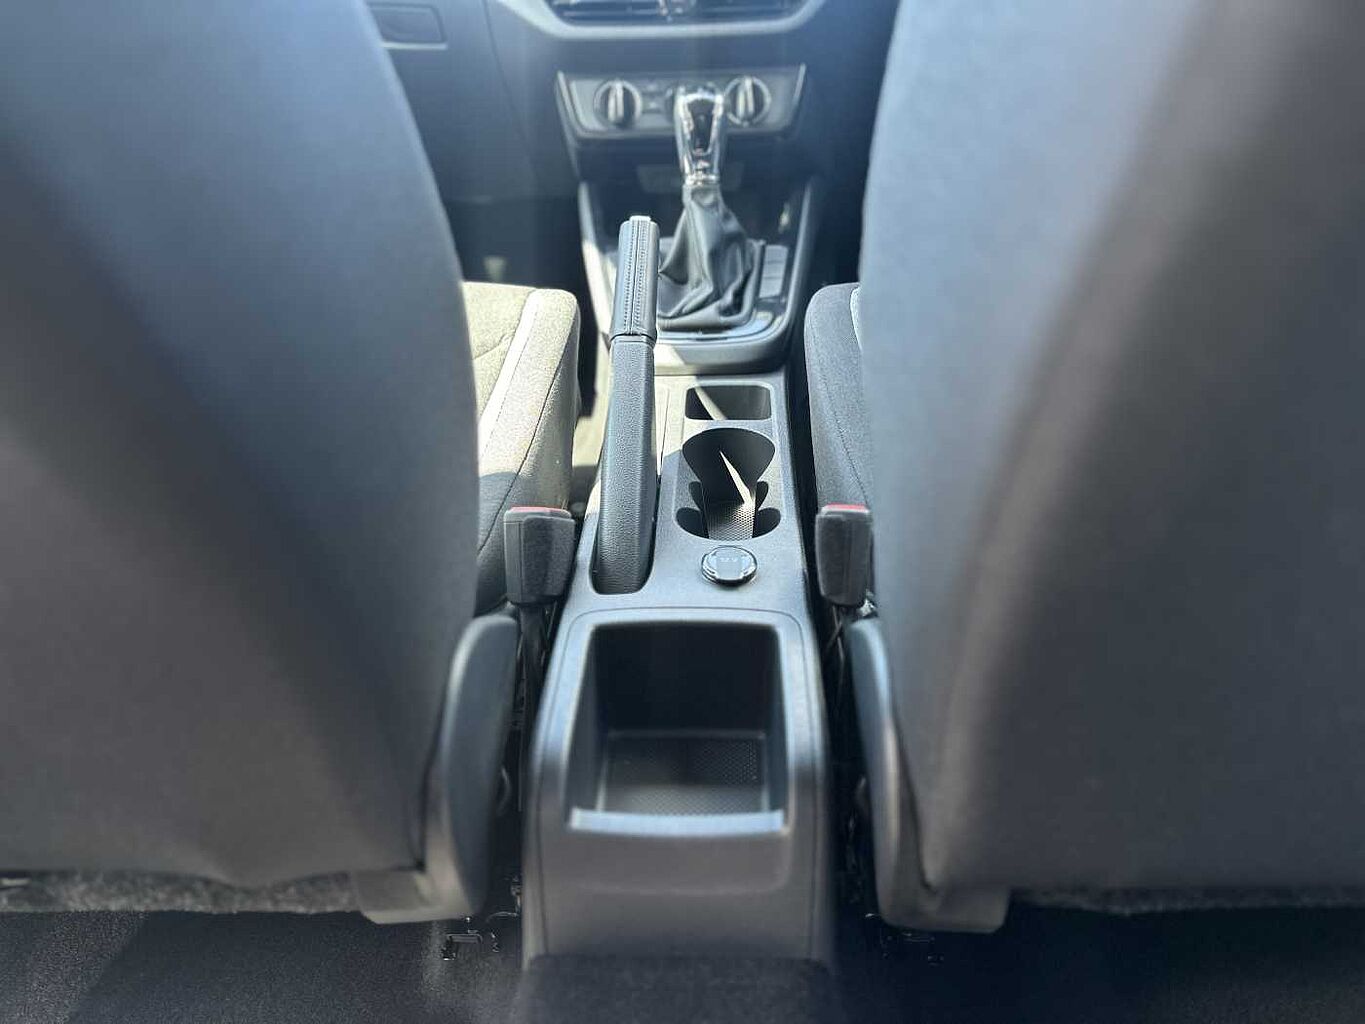 SKODA Fabia 1.0 TSI (109ps) SE Comfort DSG 5Dr Hatchback